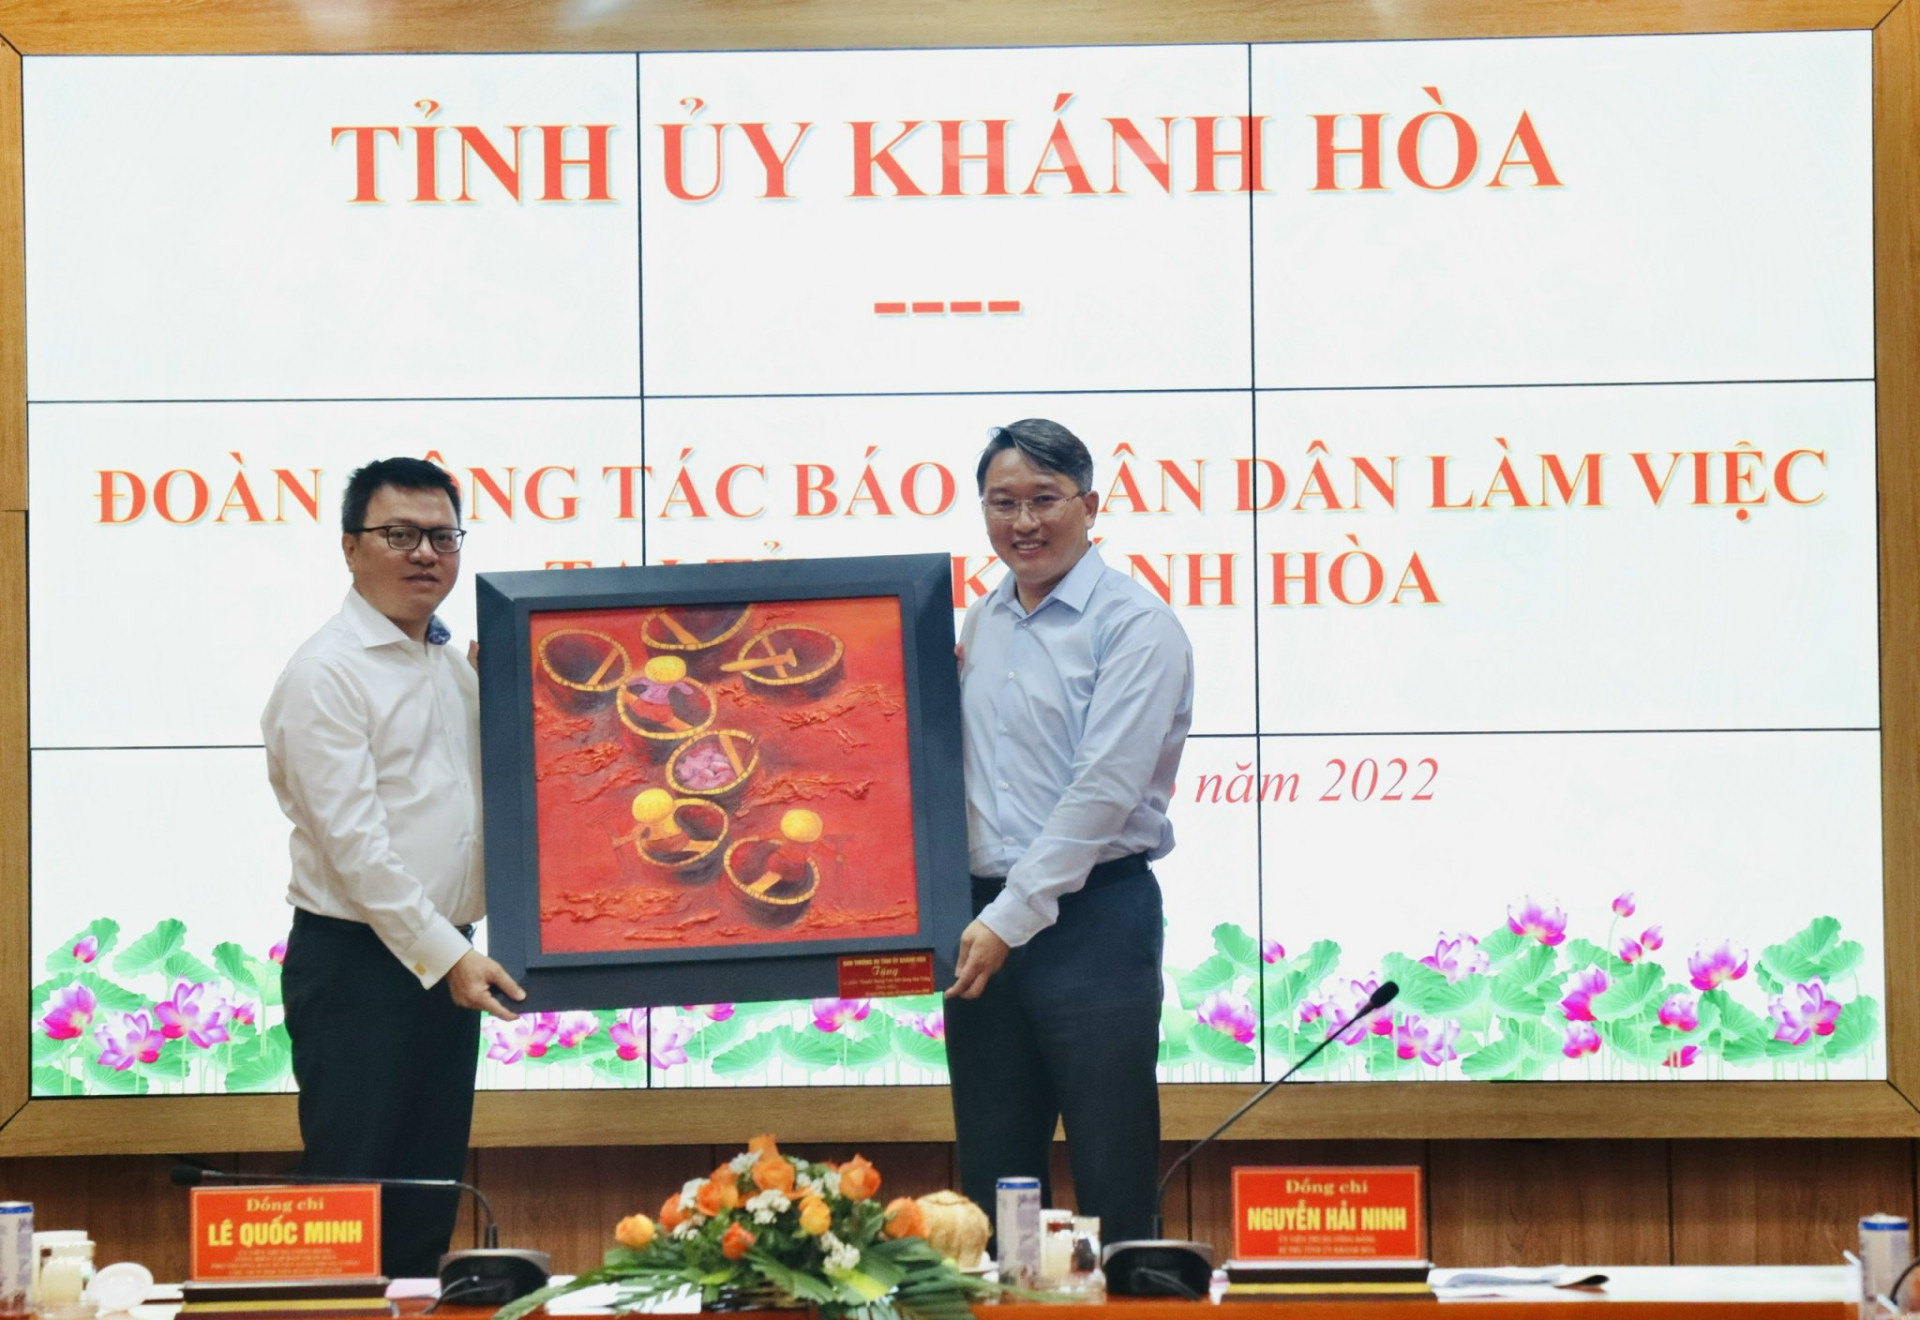 Bí thư Tỉnh ủy Khánh Hòa Nguyễn Hải Ninh tặng quà cho Đoàn công tác Báo Nhân Dân